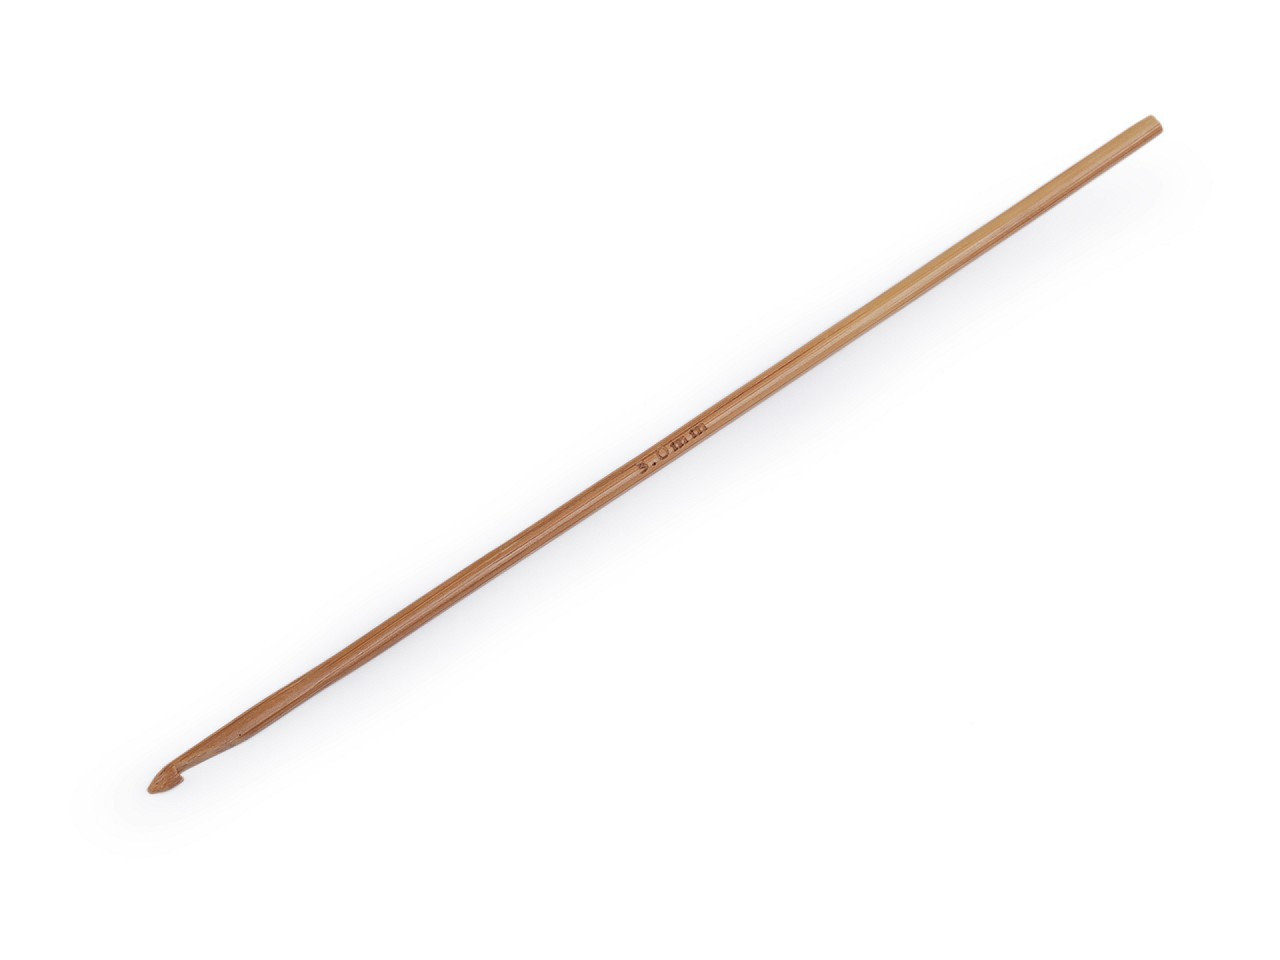 Bambusový háček na háčkování vel. 3; 4; 4,5; 5; 5,5, barva 3 (3 mm) bambus tmavý